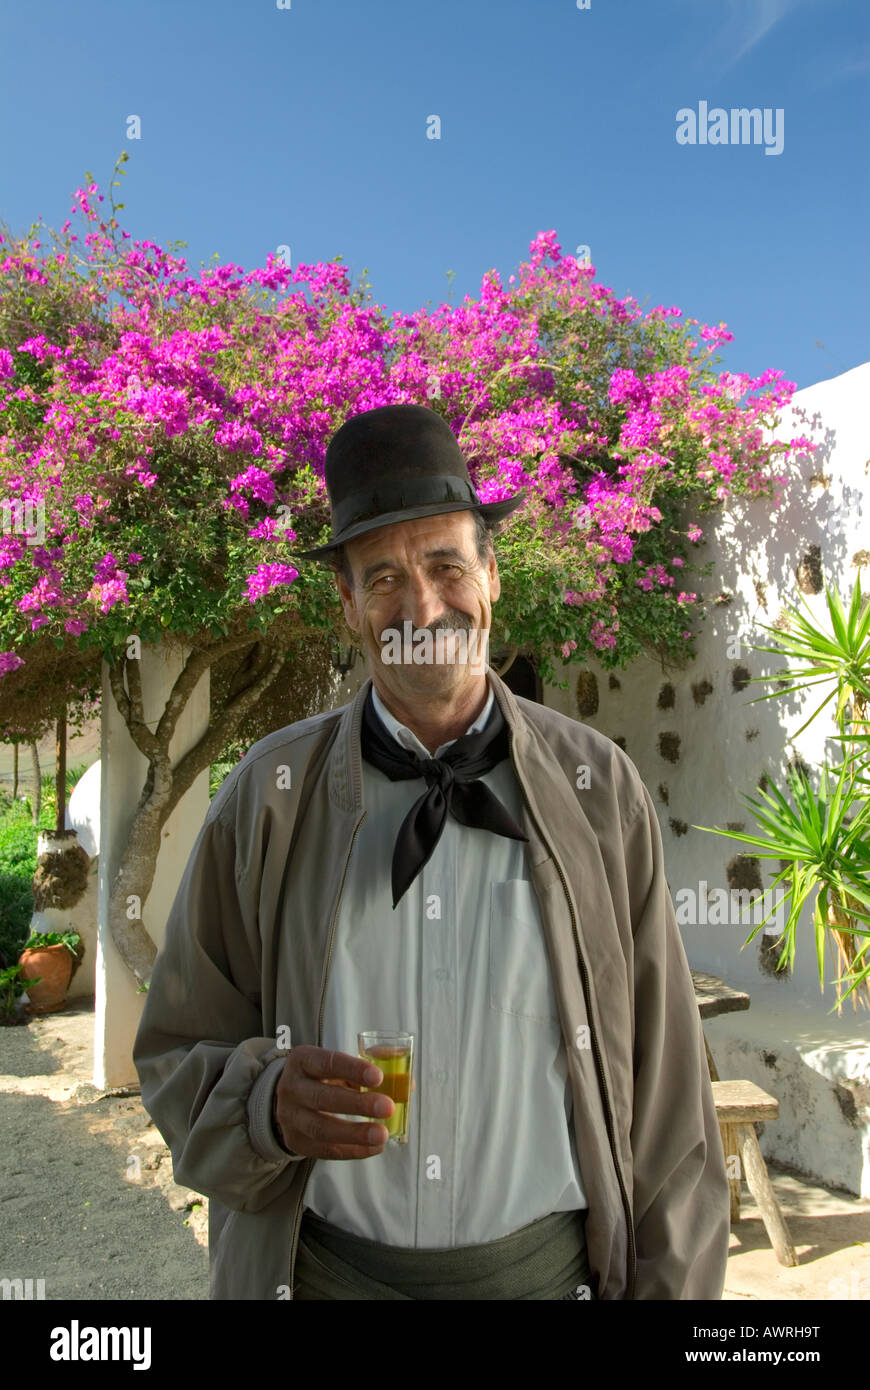 En dehors de son vinificateur bodega typique avec un verre de vin de Lanzarote, Îles Canaries Lanzarote Espagne Banque D'Images